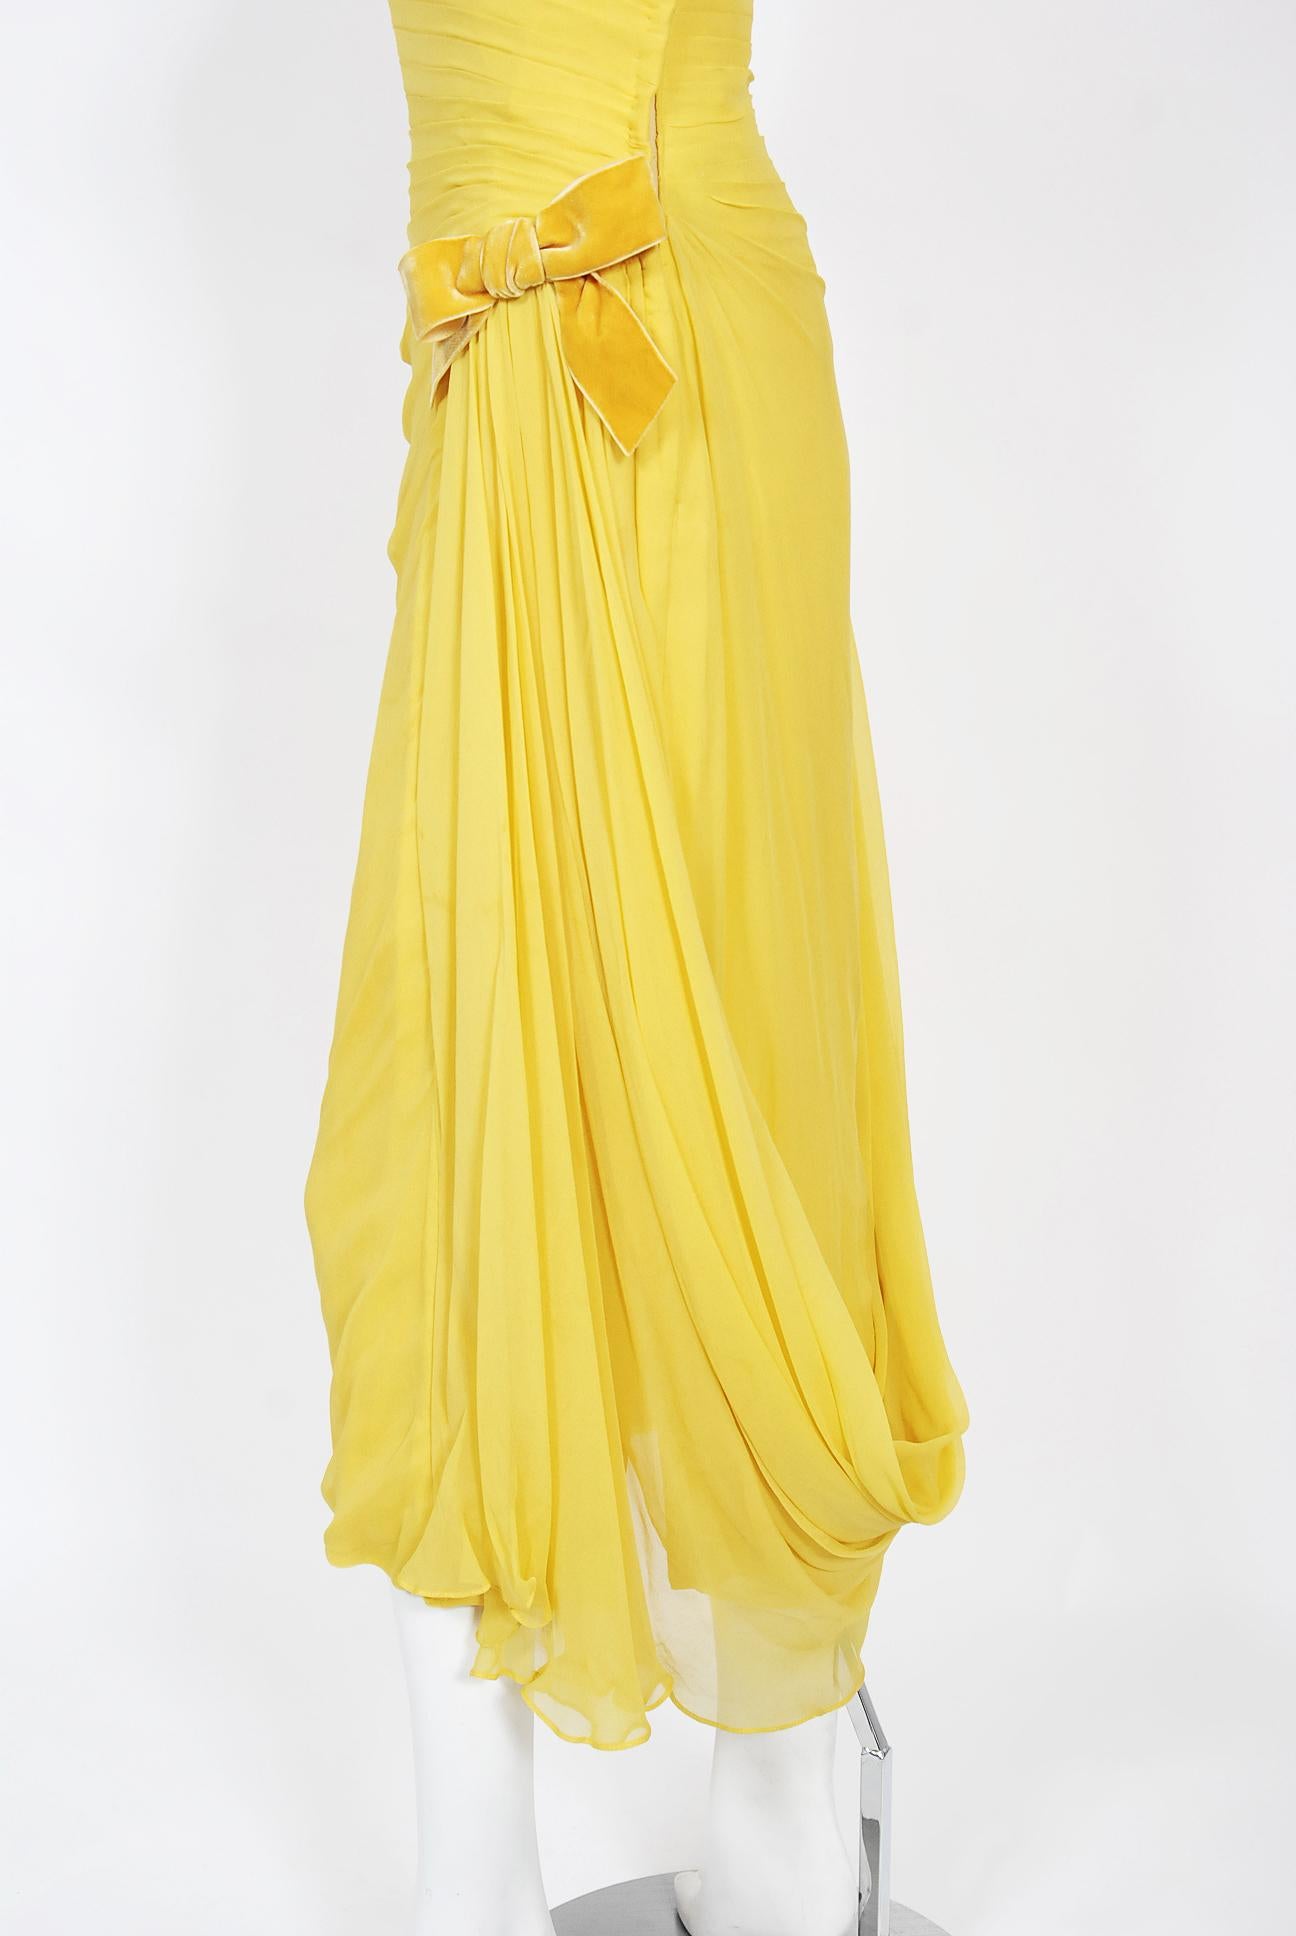 Philip Hulitar - Robe sablier drapée en mousseline de soie plissée jaune, vintage, années 1950 en vente 2